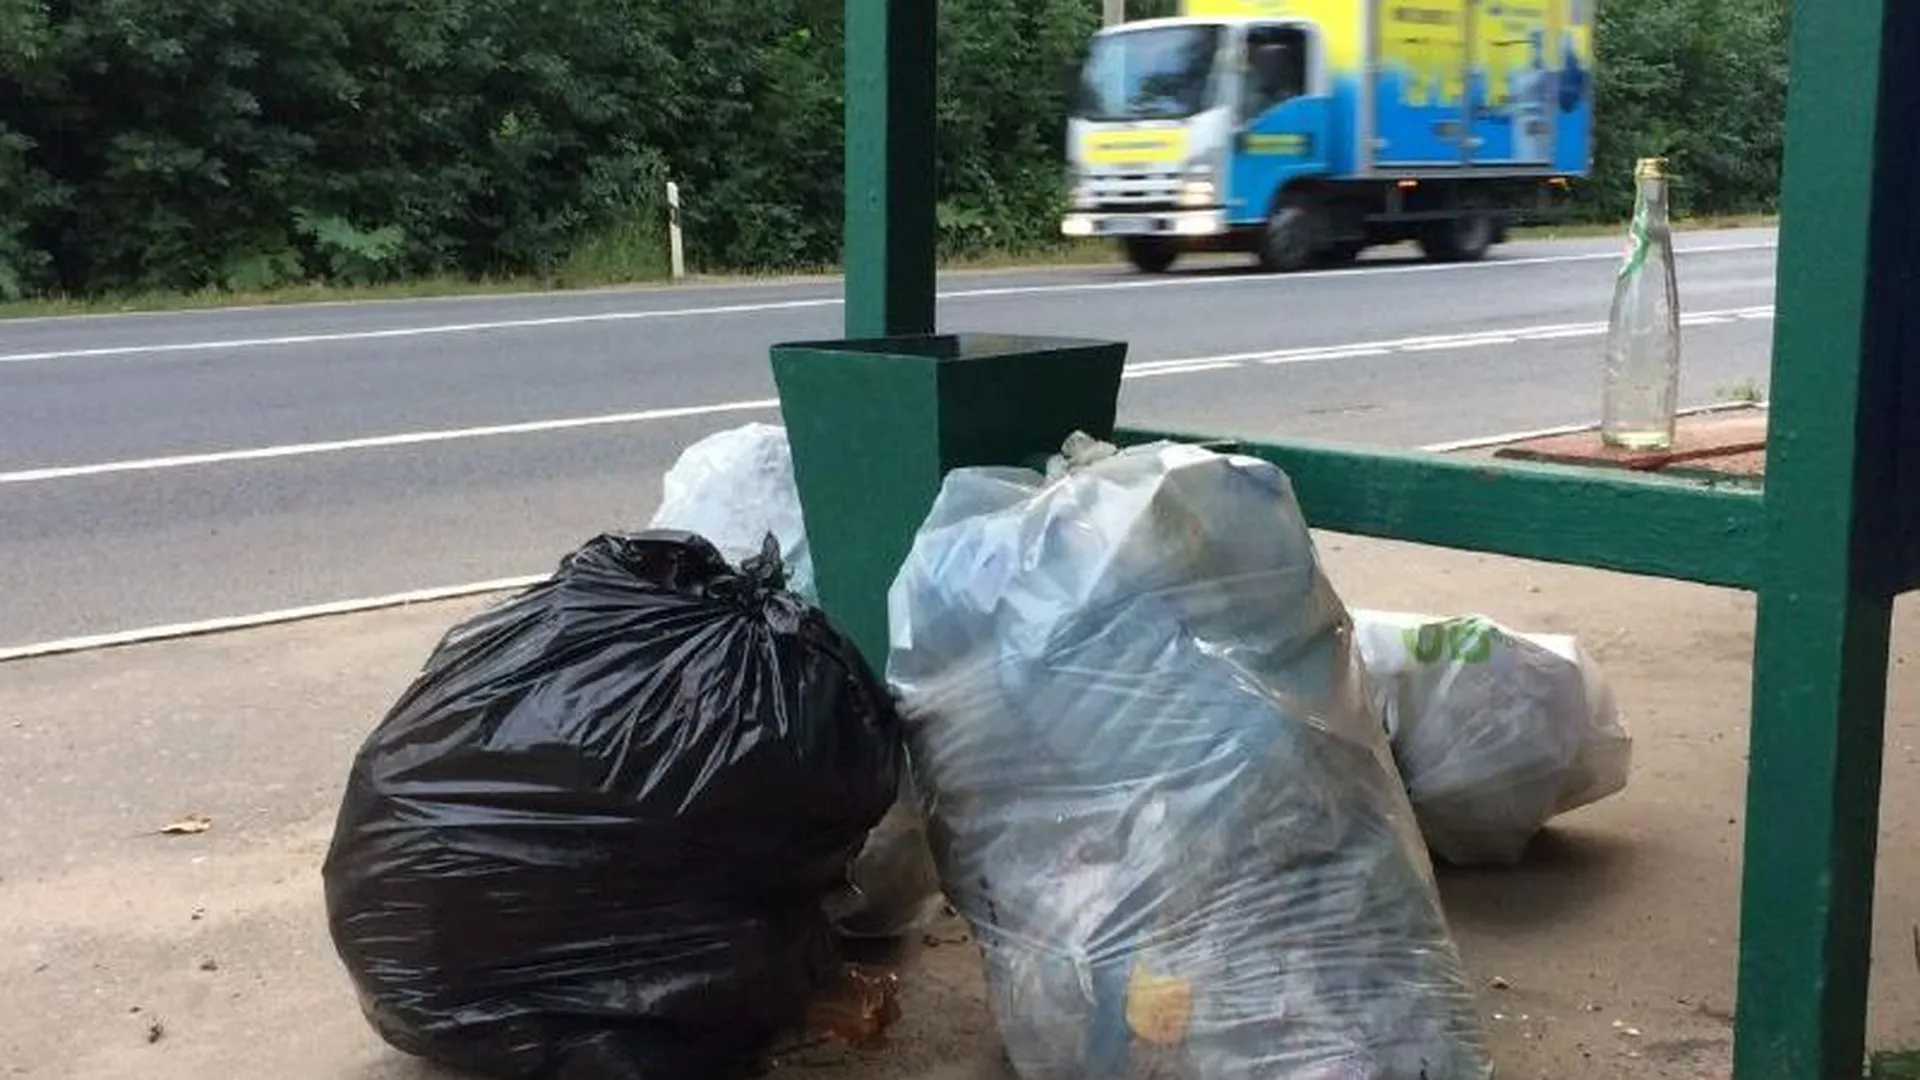 Восемь попыток незаконно выбросить мусор выявили в ходе рейда на дорогах МО 17 августа 